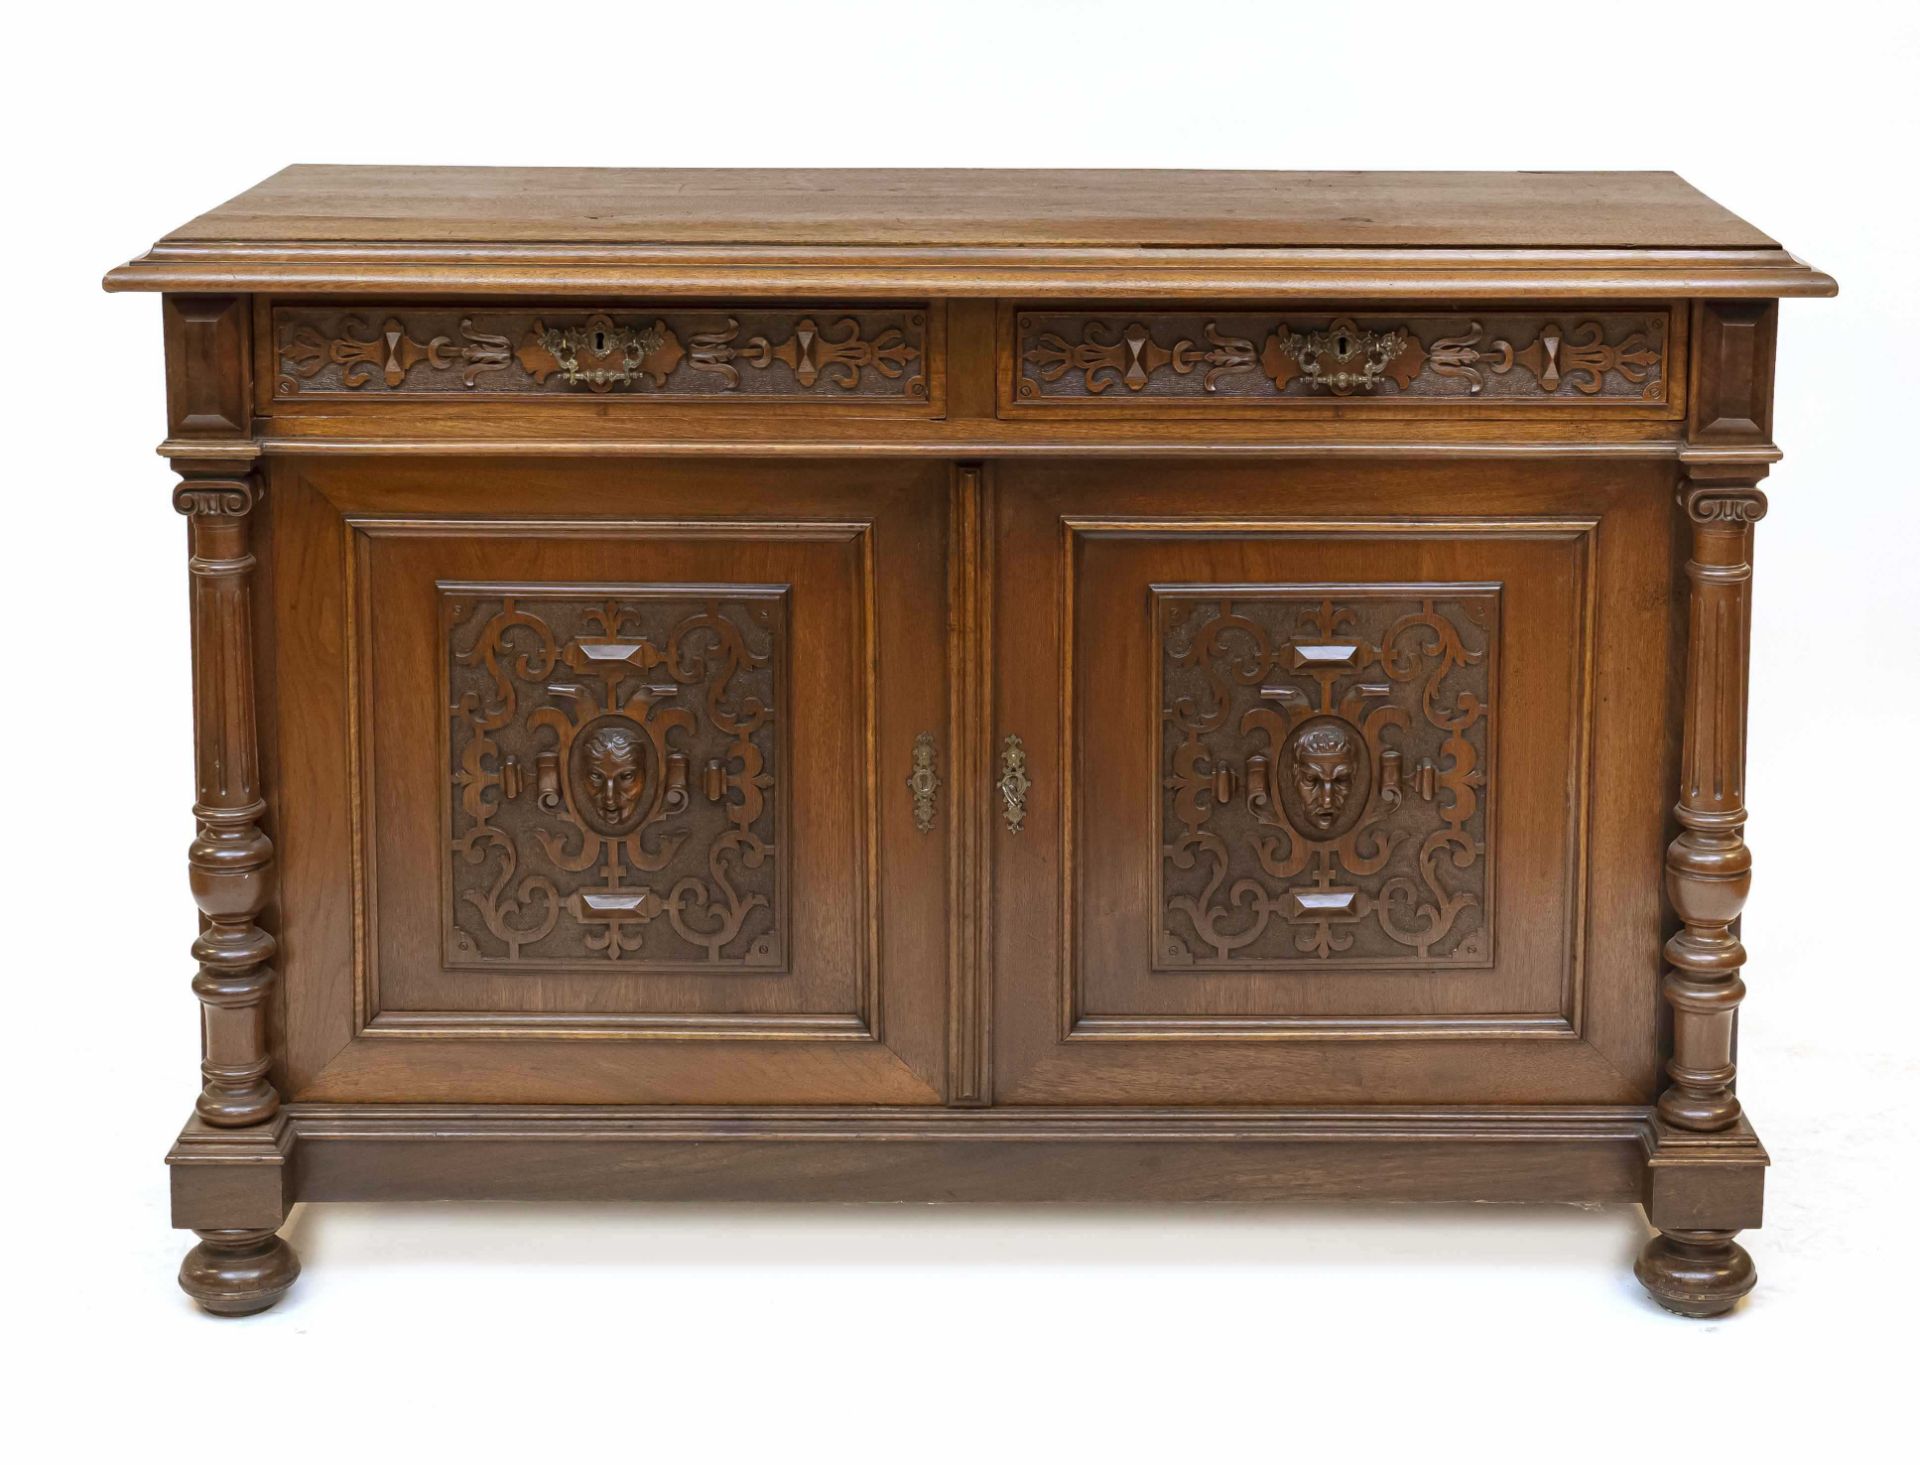 Sideboard/semi-cabinet, Wilhelminian style around 1880, walnut, 2-door body with 2 drawers, door